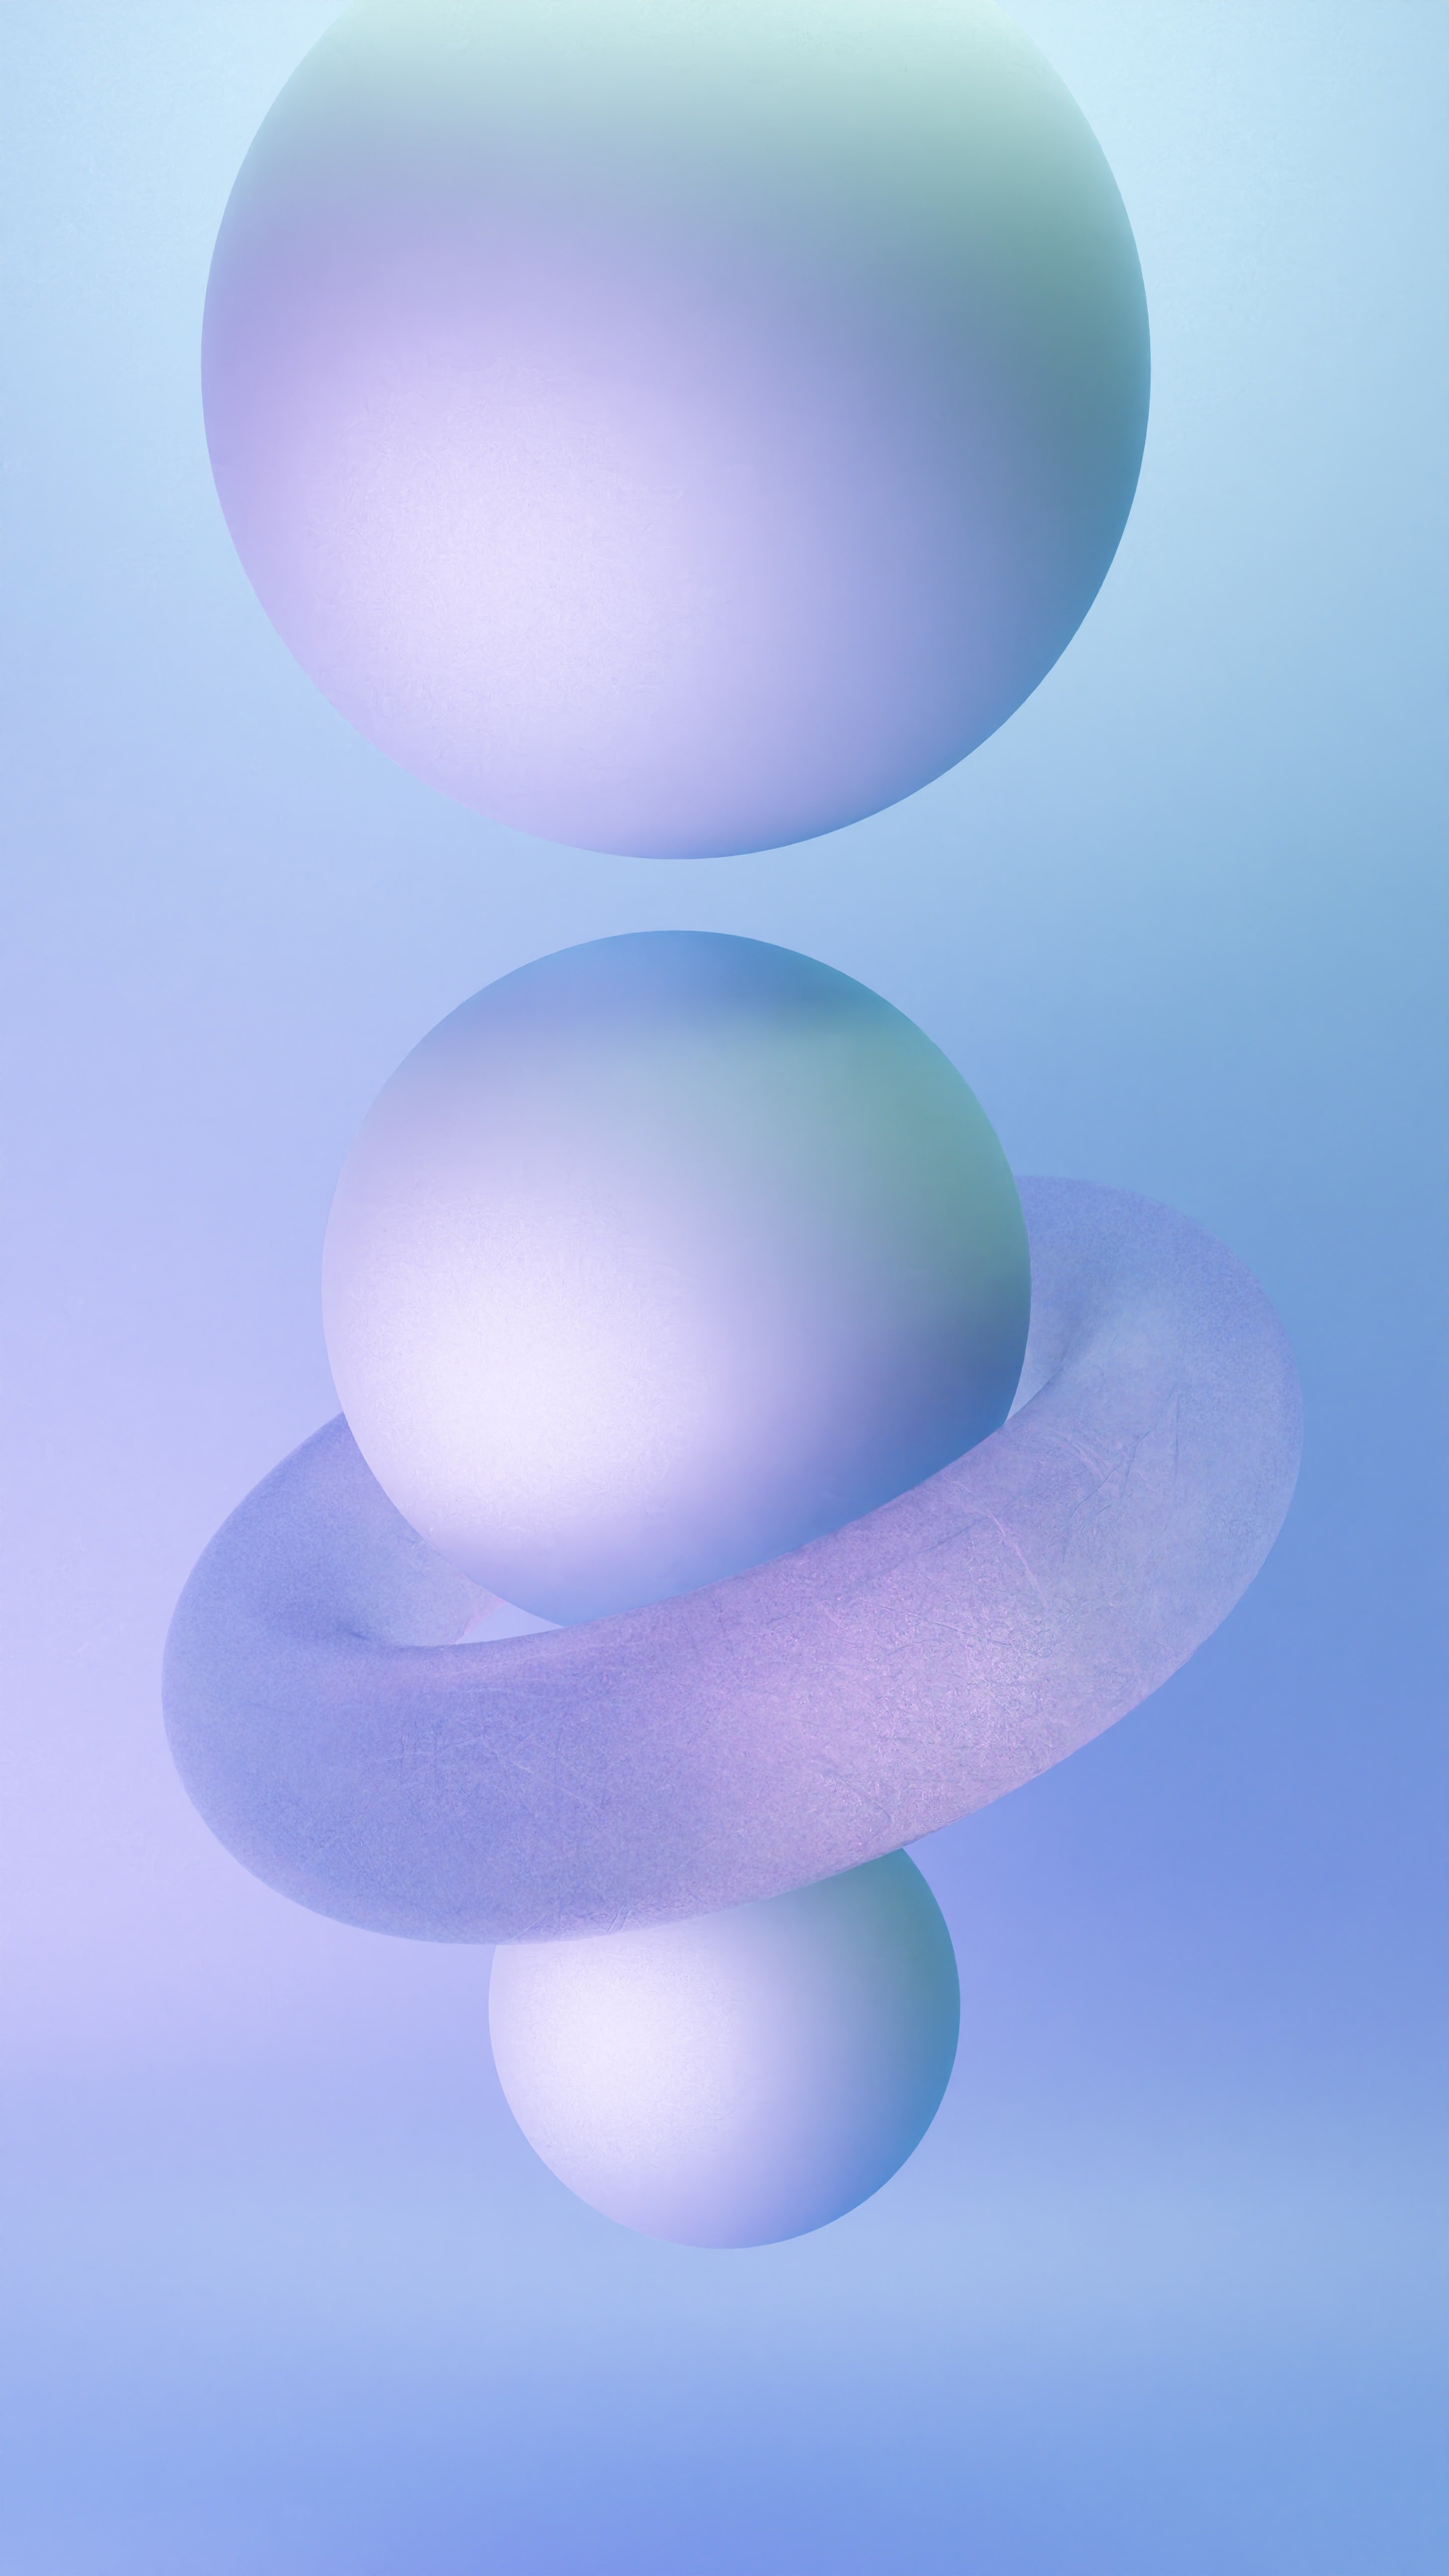 Ball, sphere, 3D modeling Wallpaper 2880x5120